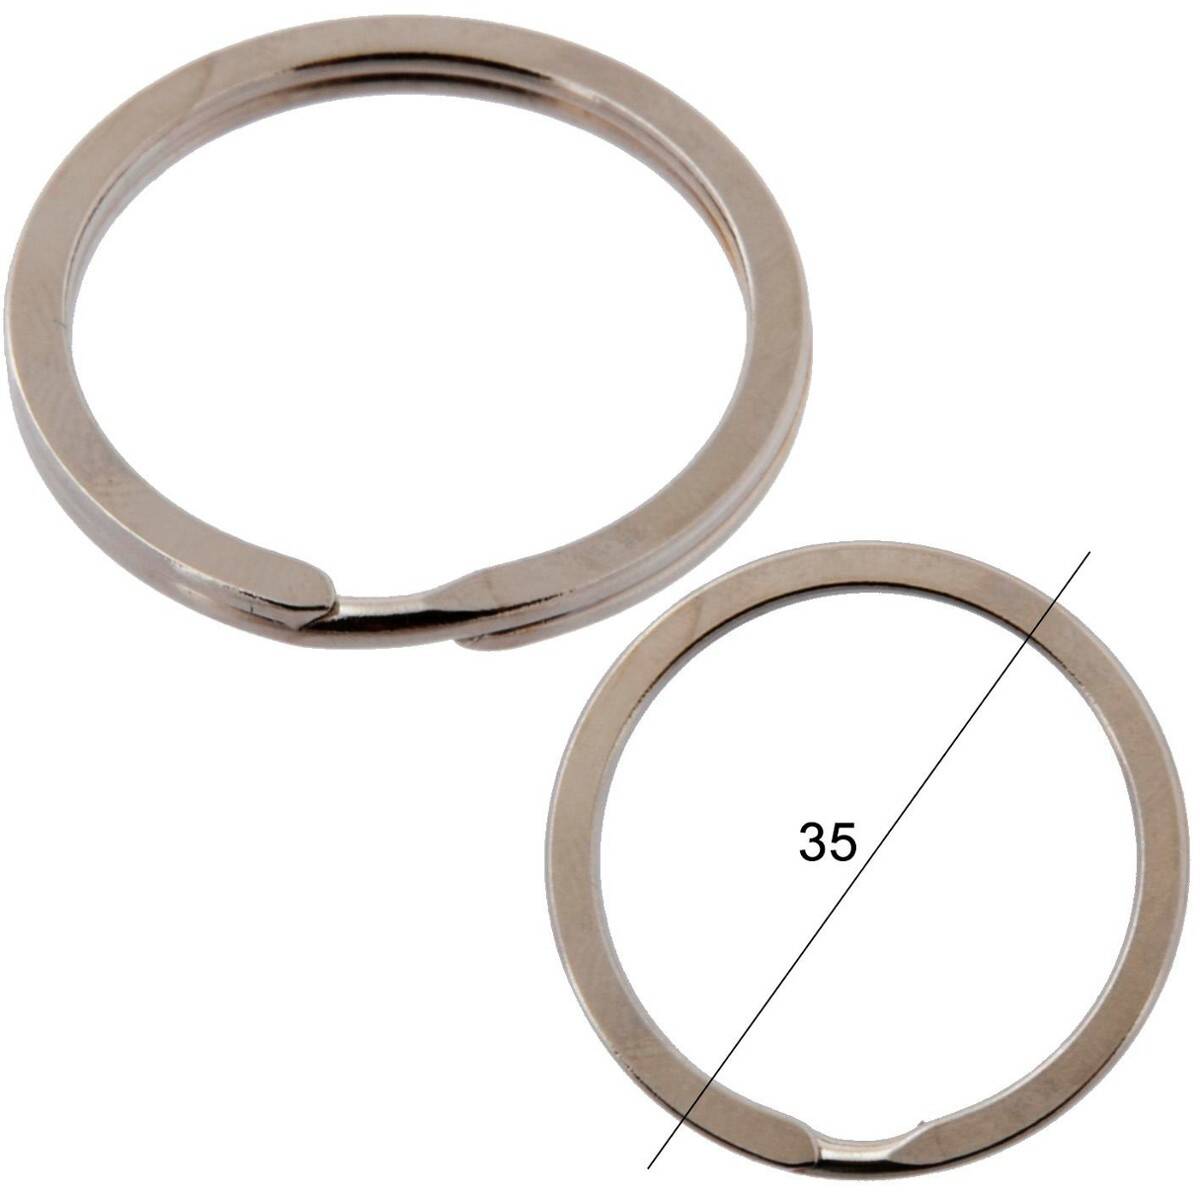 Key rings for keys flat diameter 35mm